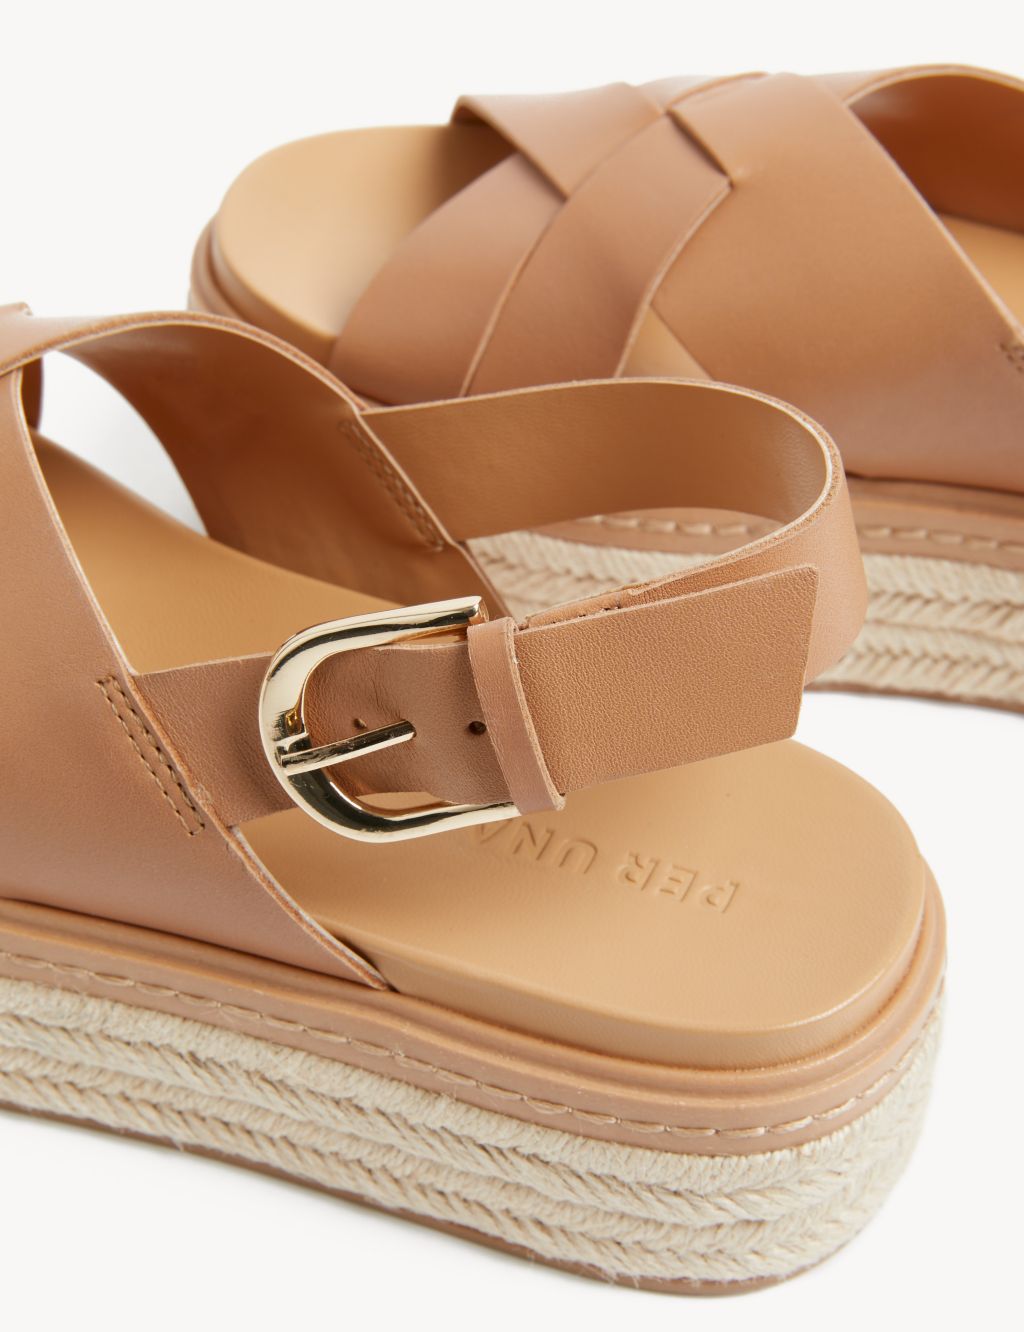 Leather Crossover Flatform Sandals image 2